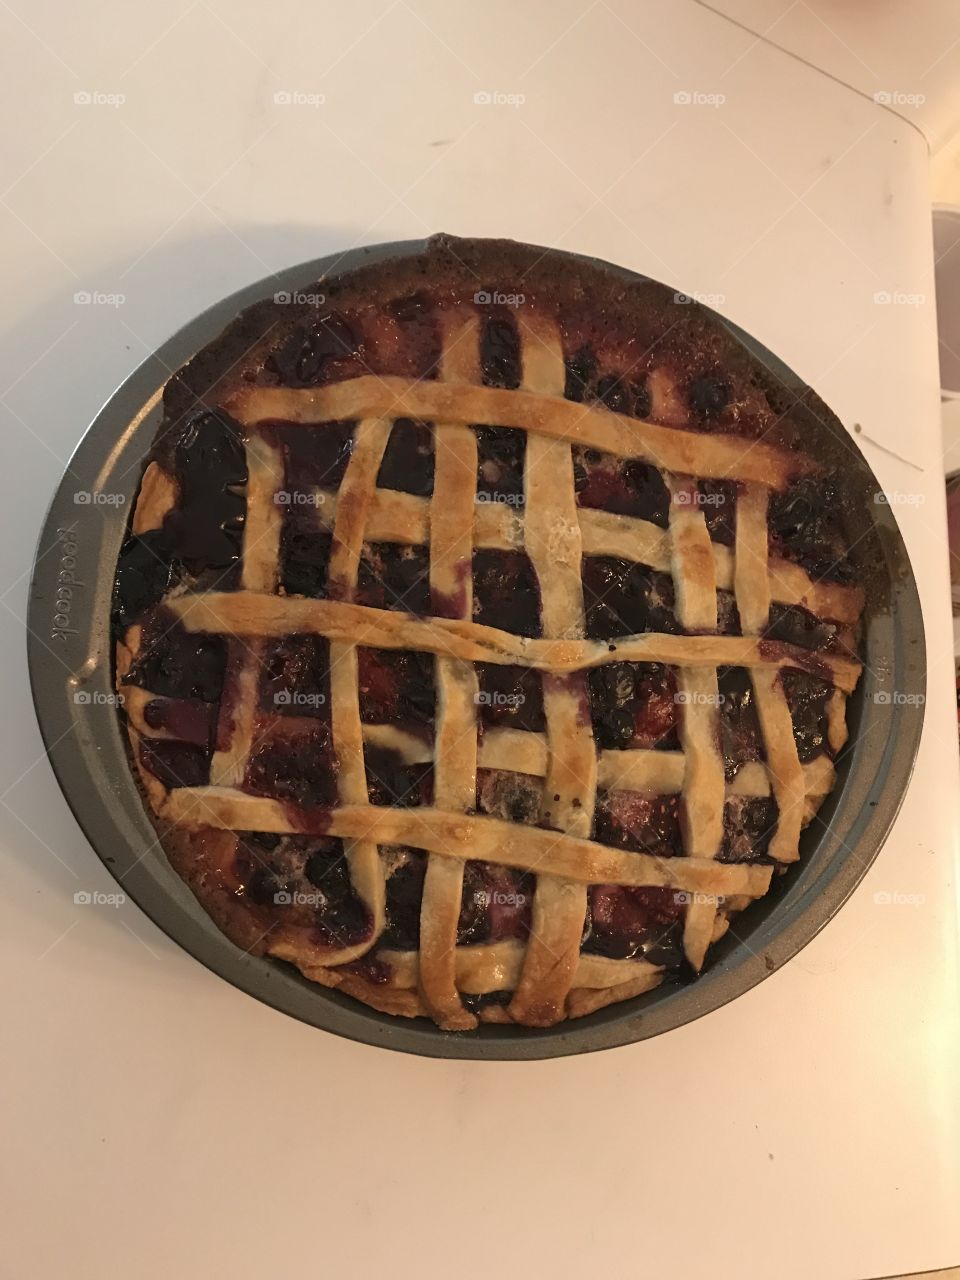 Home made berry pie